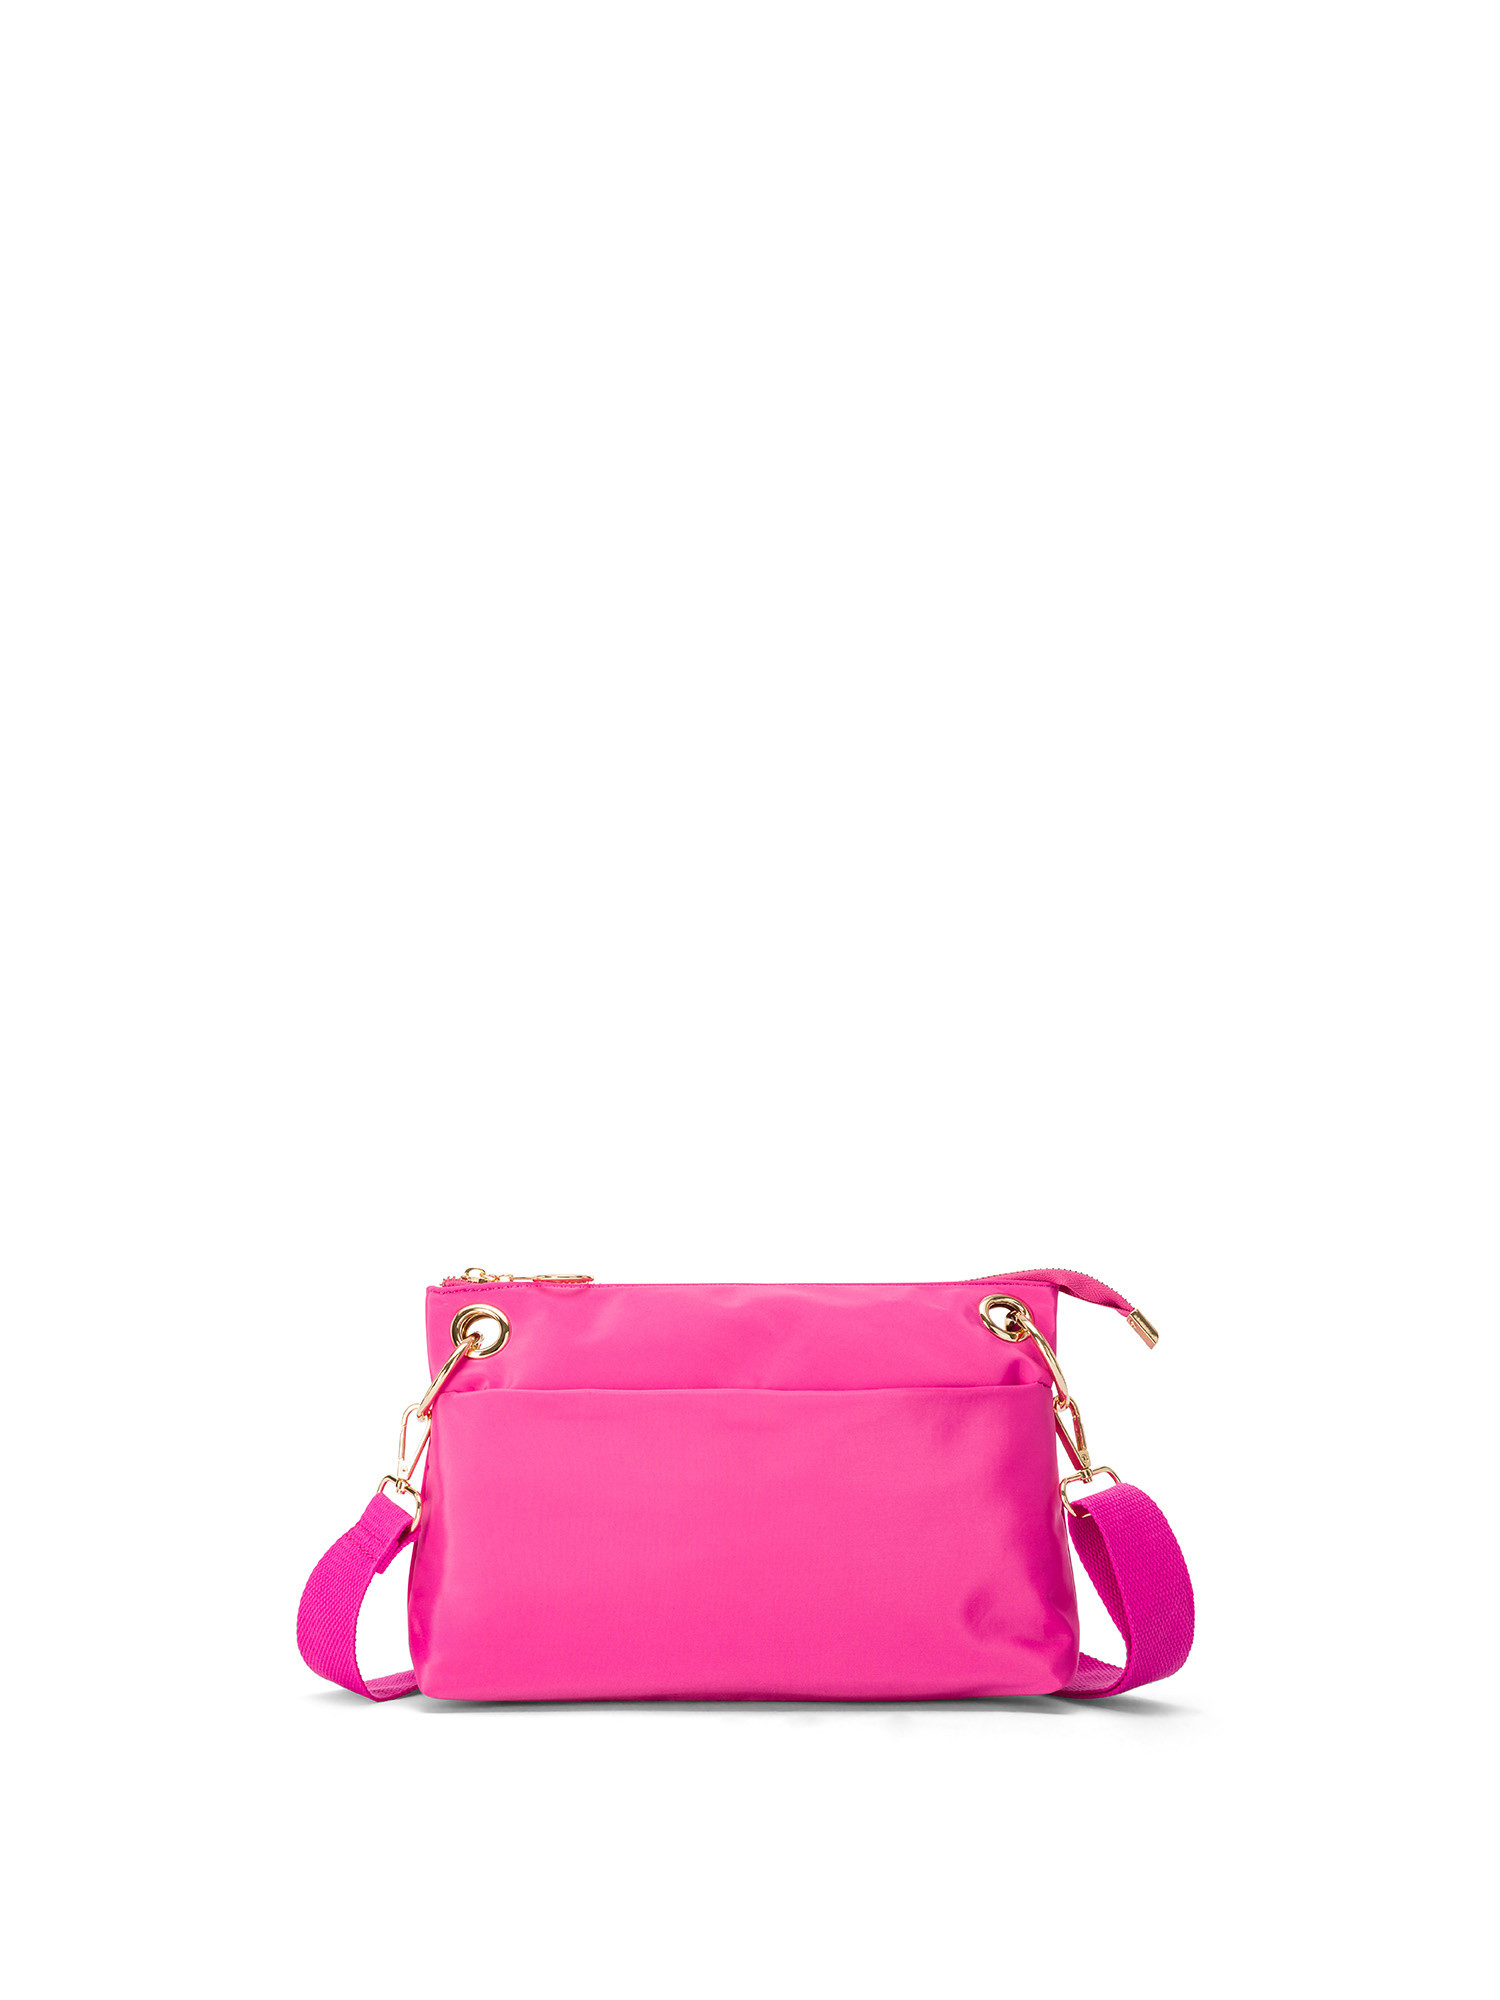 Koan - Messenger bag in nylon fabric, Dark Pink, large image number 0